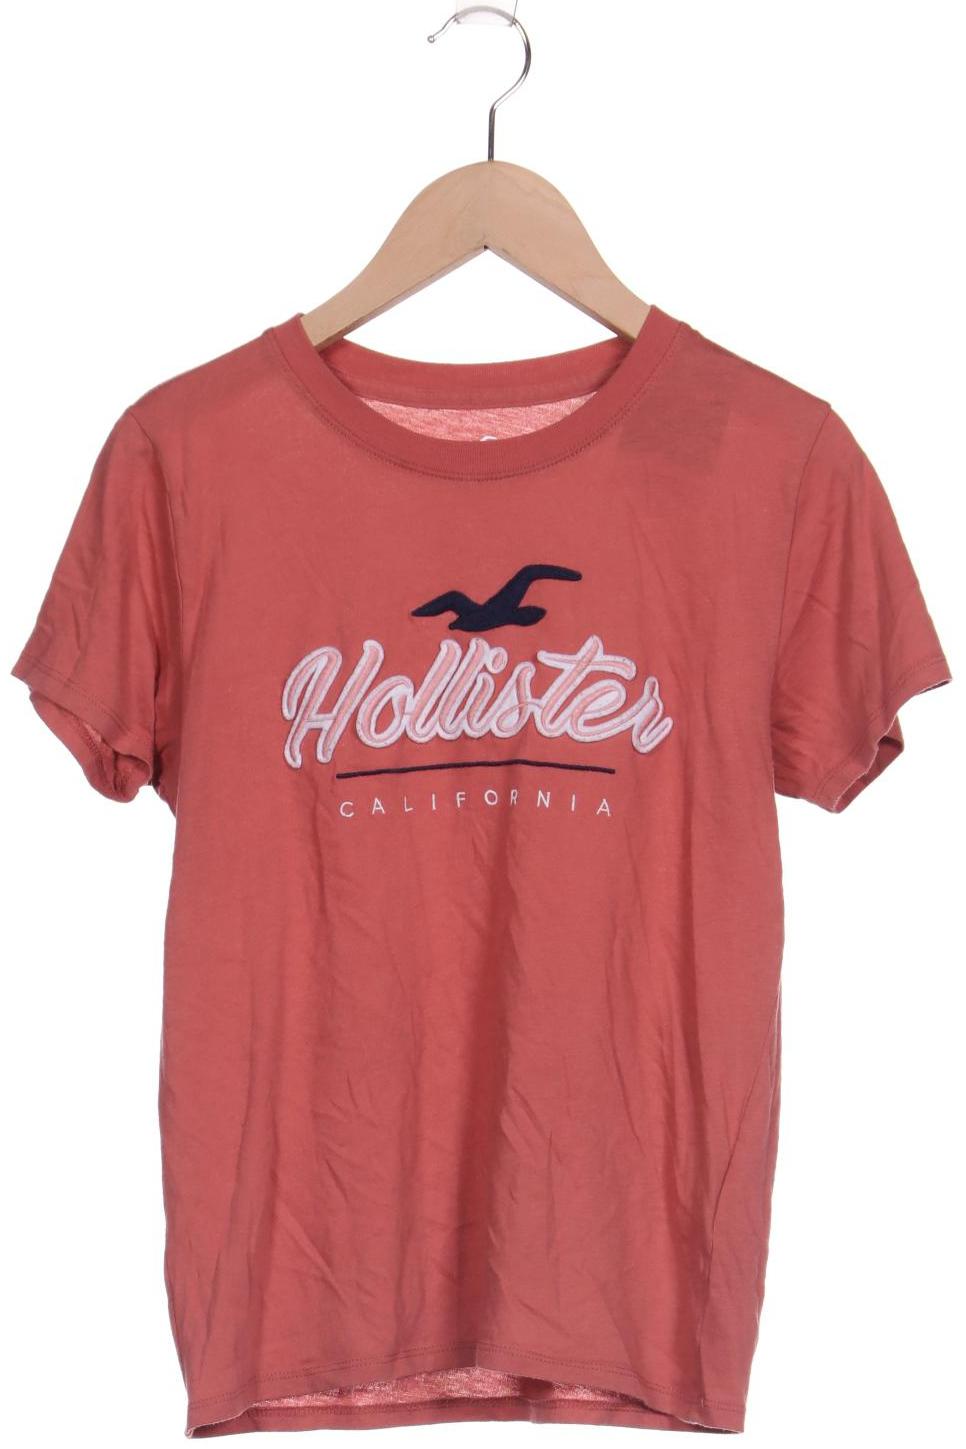 Hollister Damen T-Shirt, orange, Gr. 34 von Hollister